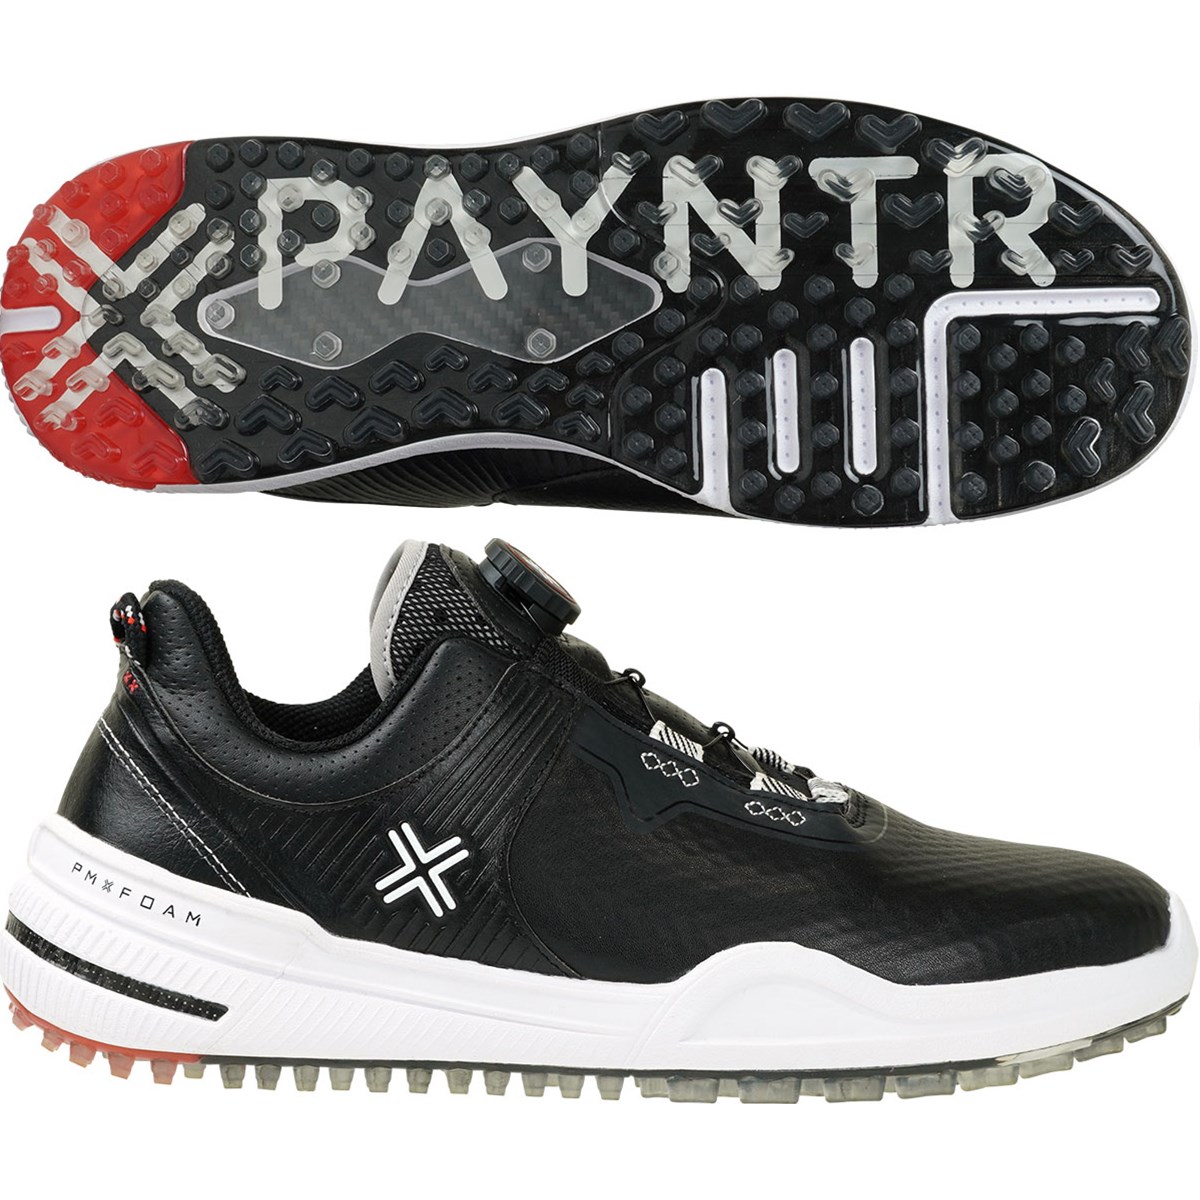 Payntr X 002 FF ゴルフシューズ(【男性】シューズ)|PAYNTR GOLF